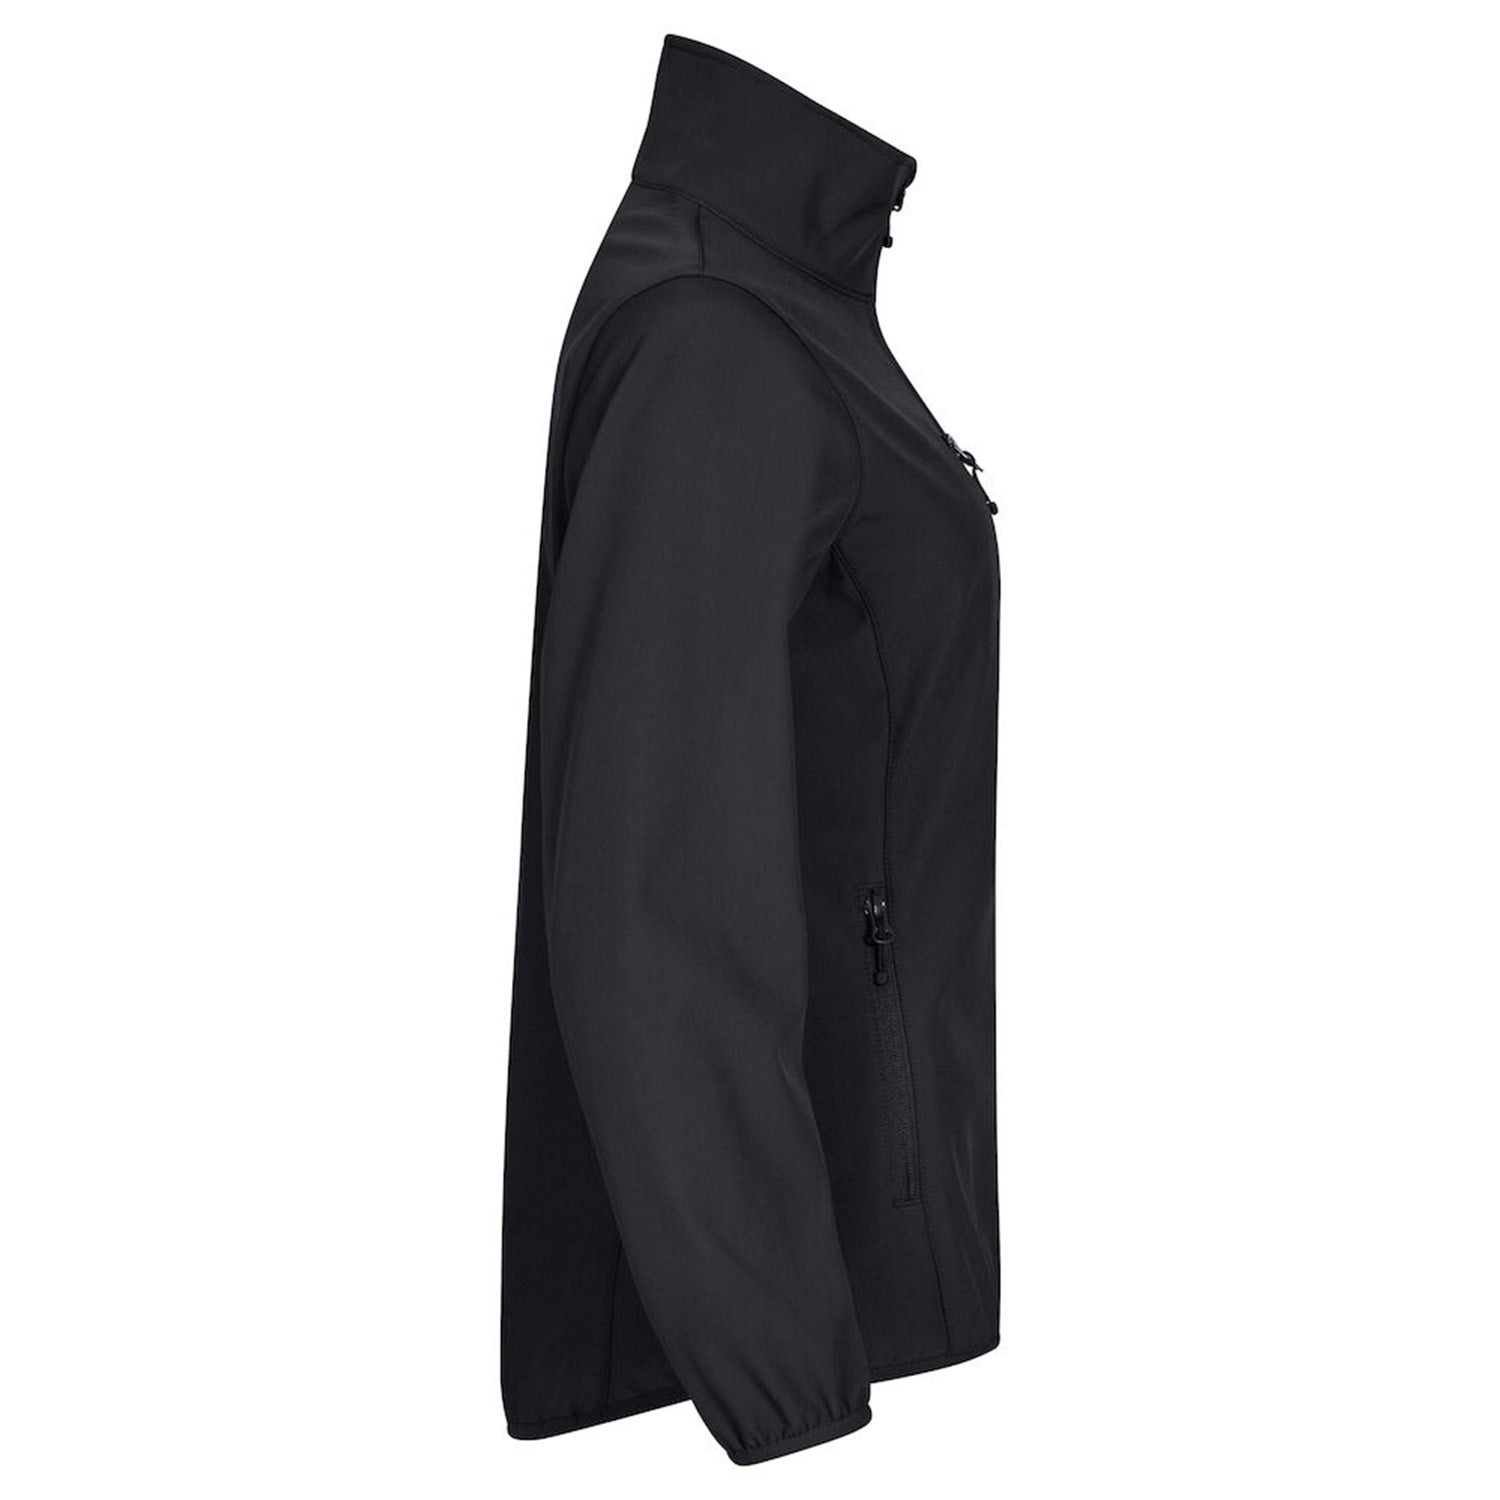 Clique Beveiliging Softshell jas Dames Zwart met Borst- en Ruglogo - van Clique - Nu voor maar €49.95 bij Workwear 2 Day